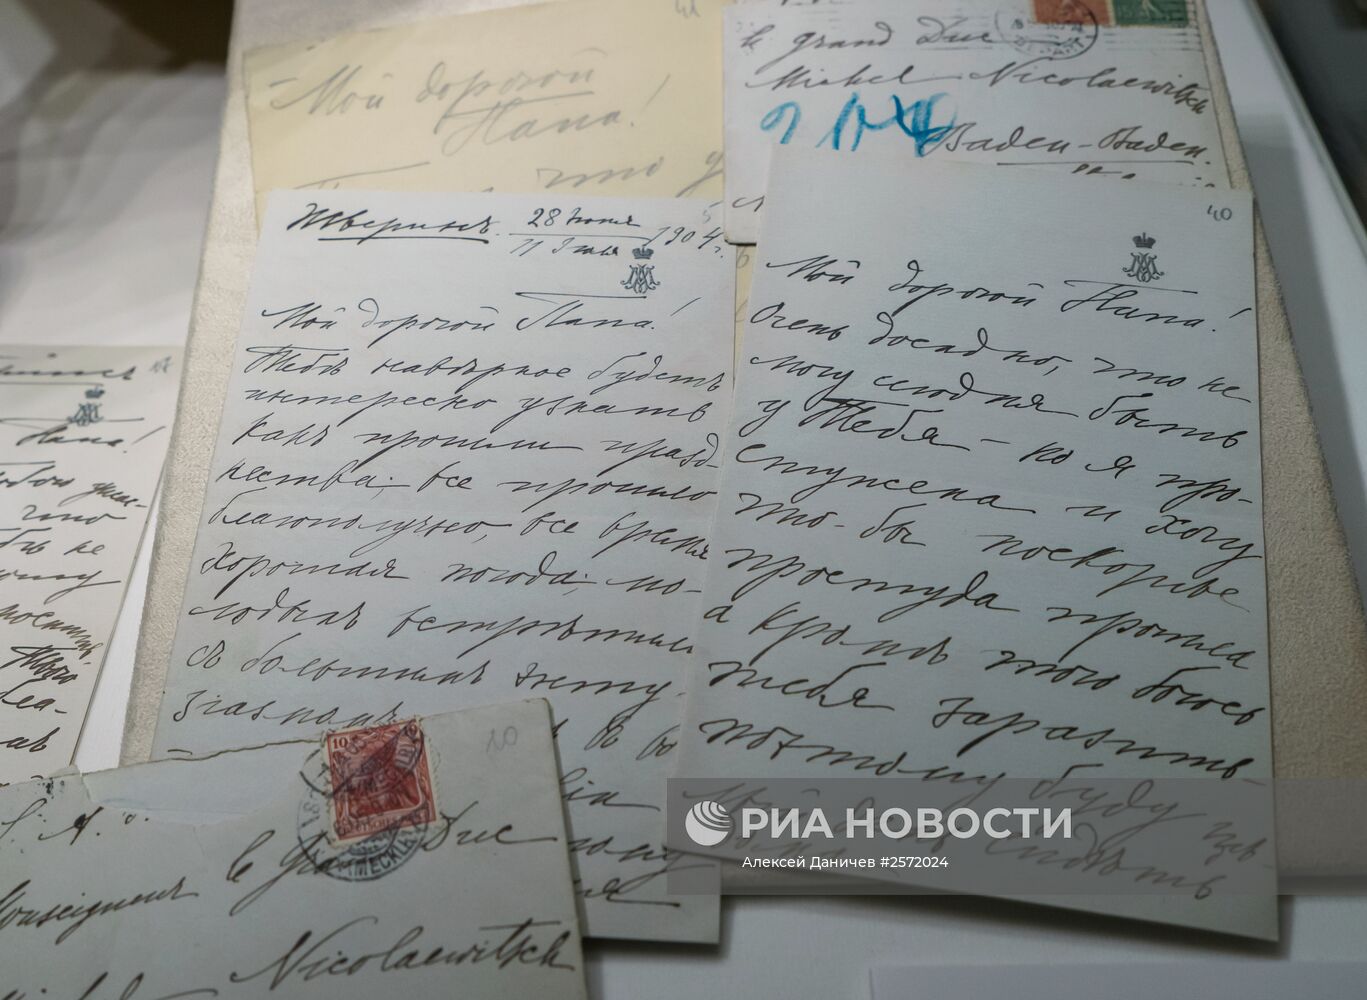 Передача материалов из личного архива князей Юсуповых Госархиву РФ